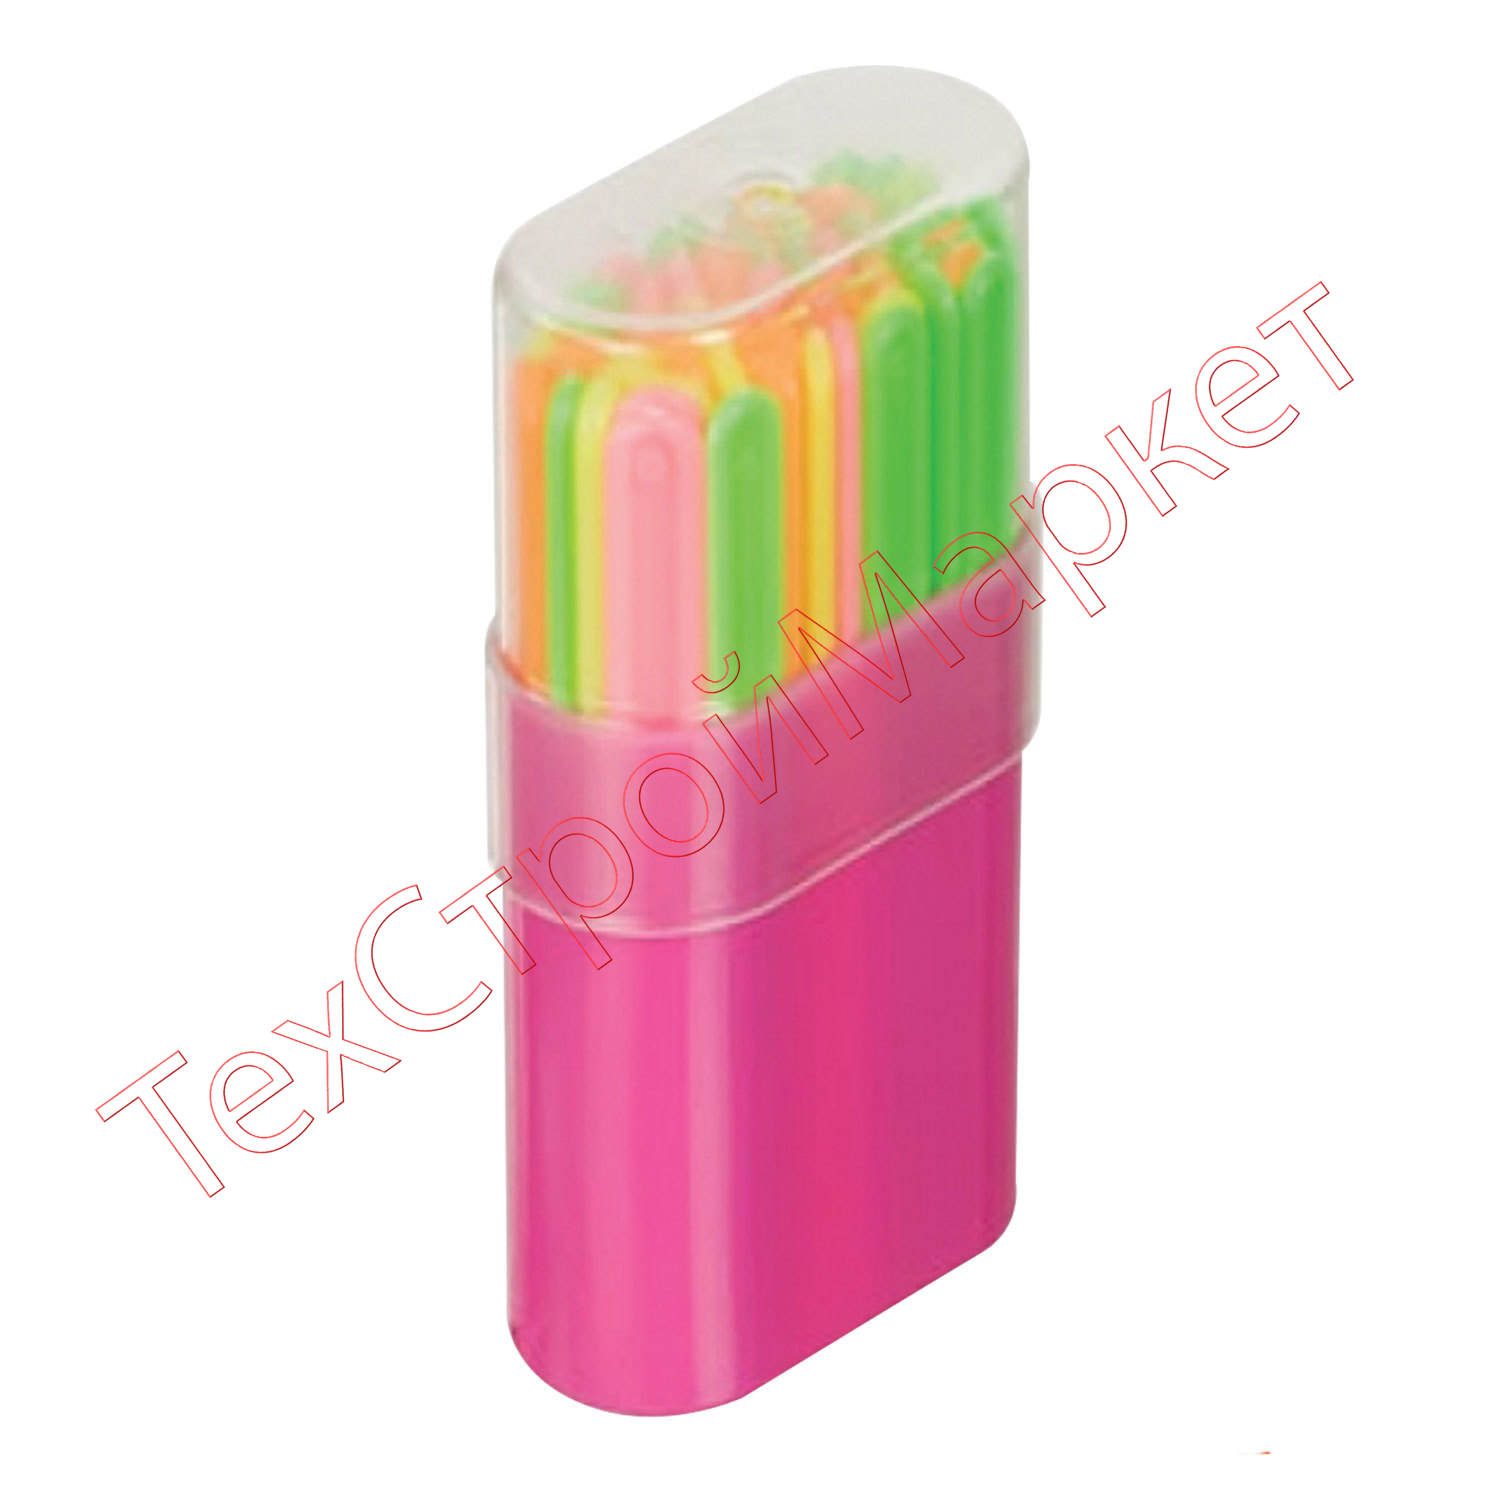 Счетные палочки СТАММ (30 штук) многоцветные, в пластиковом пенале, СП06